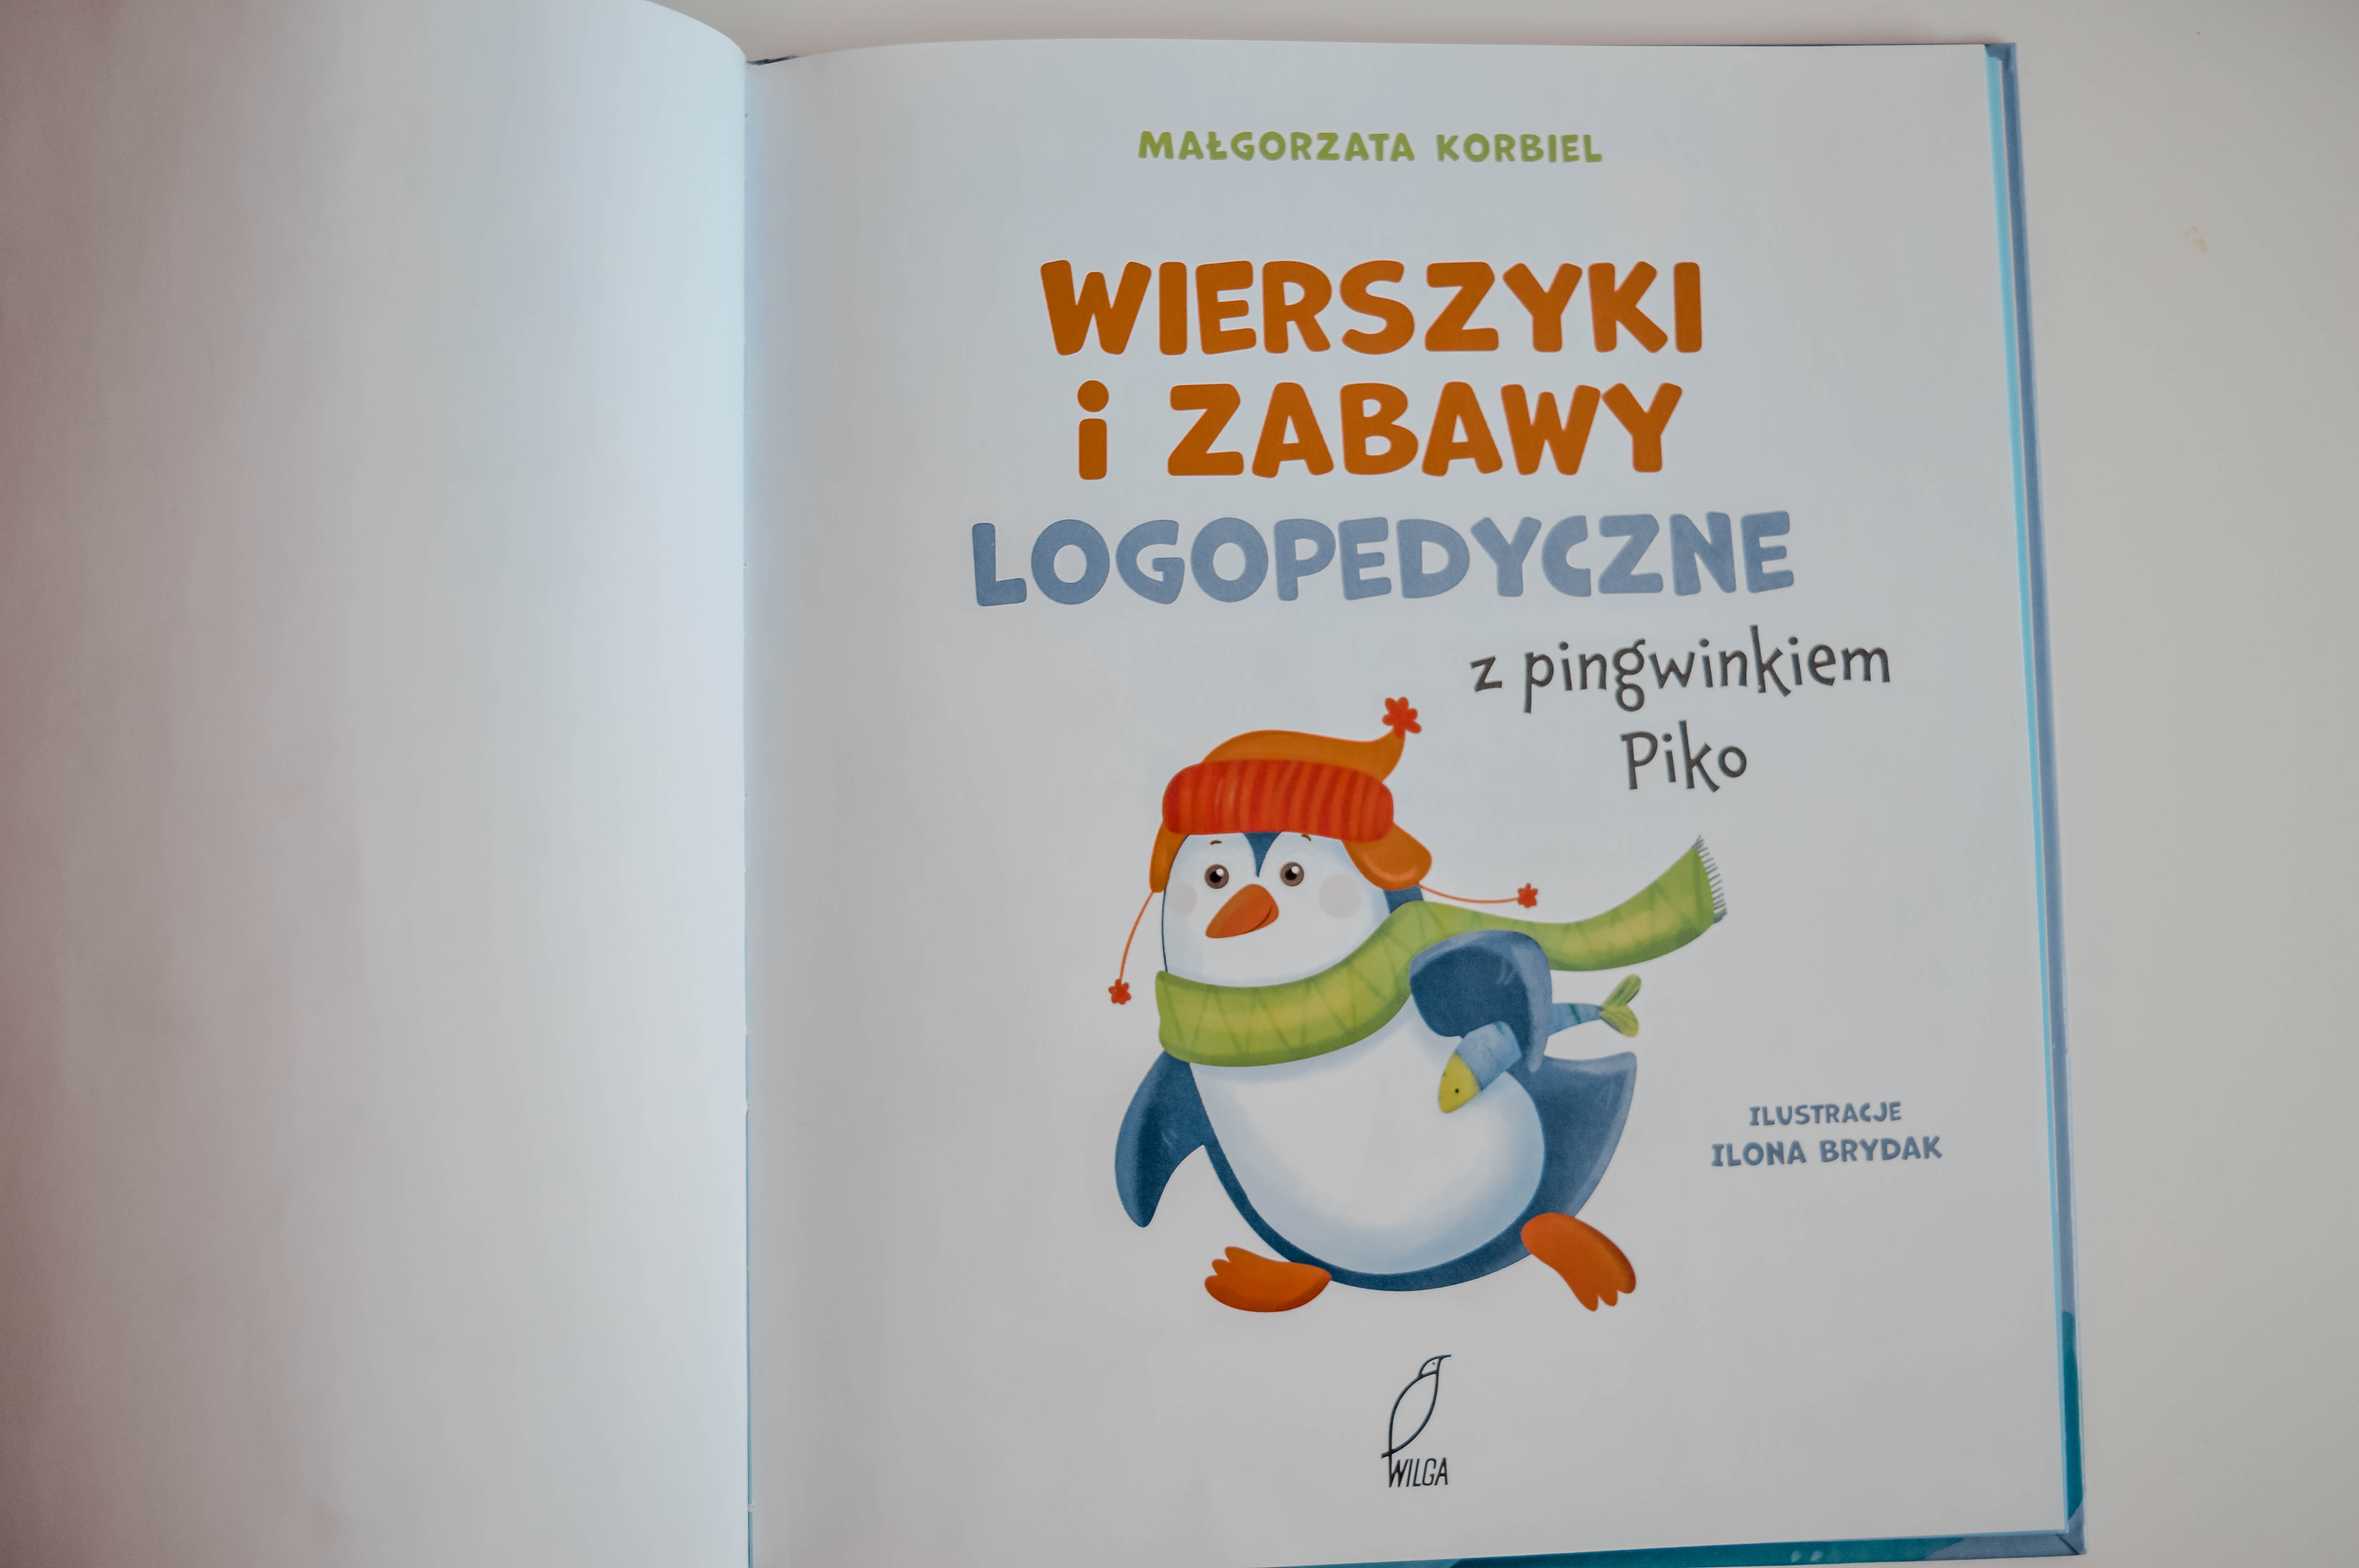 wierszyki i zabawy logopedyczne z pingwinkiem Piko M Korbiel - Wilga - książka z zabawami logopedycznymi dla dzieci 6 lat 